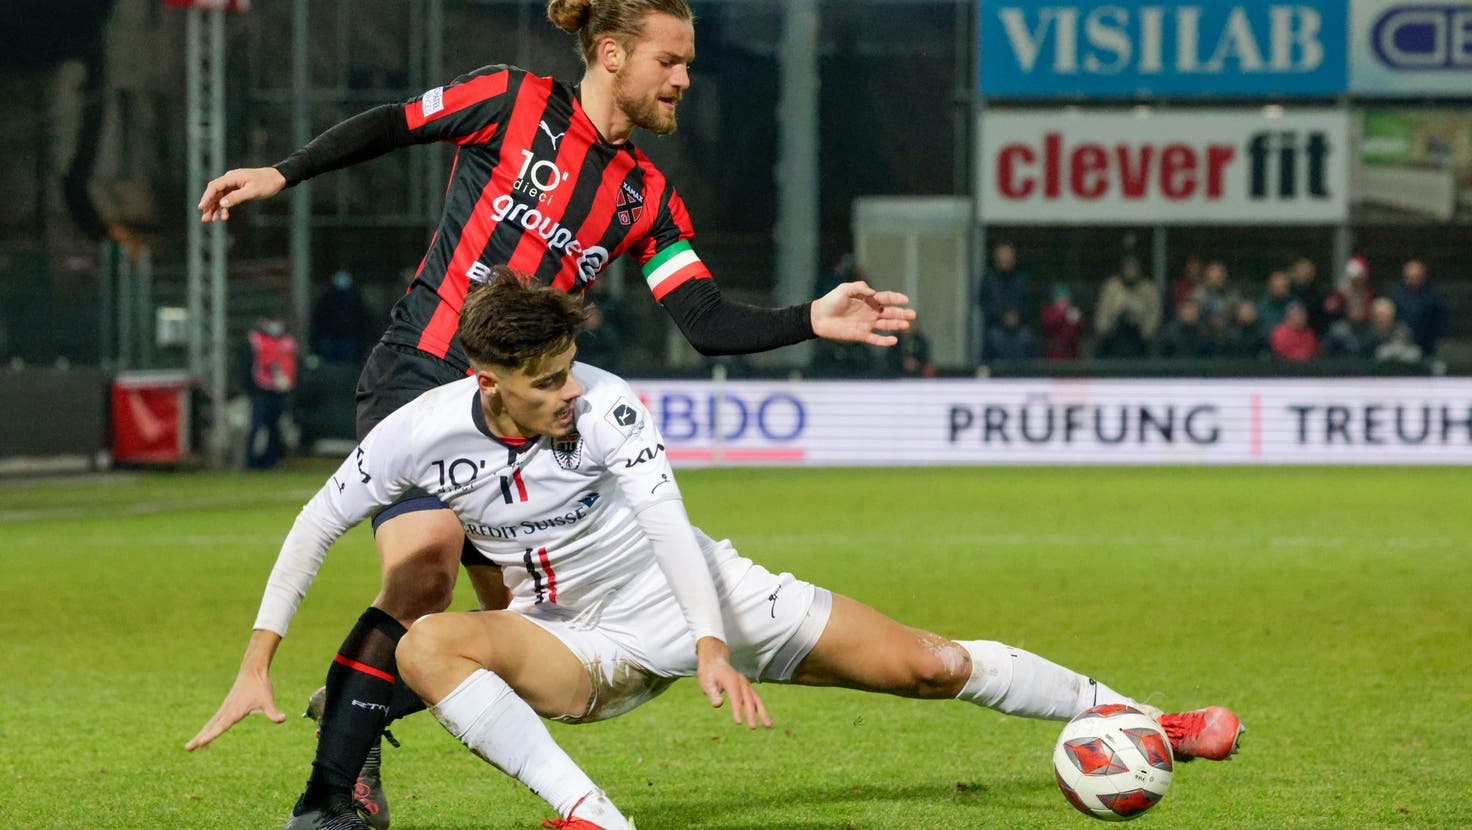 Jetzt live: Handspiel Njie, Penalty Nuzzolo – der FC Aarau liegt zur Pause zurück